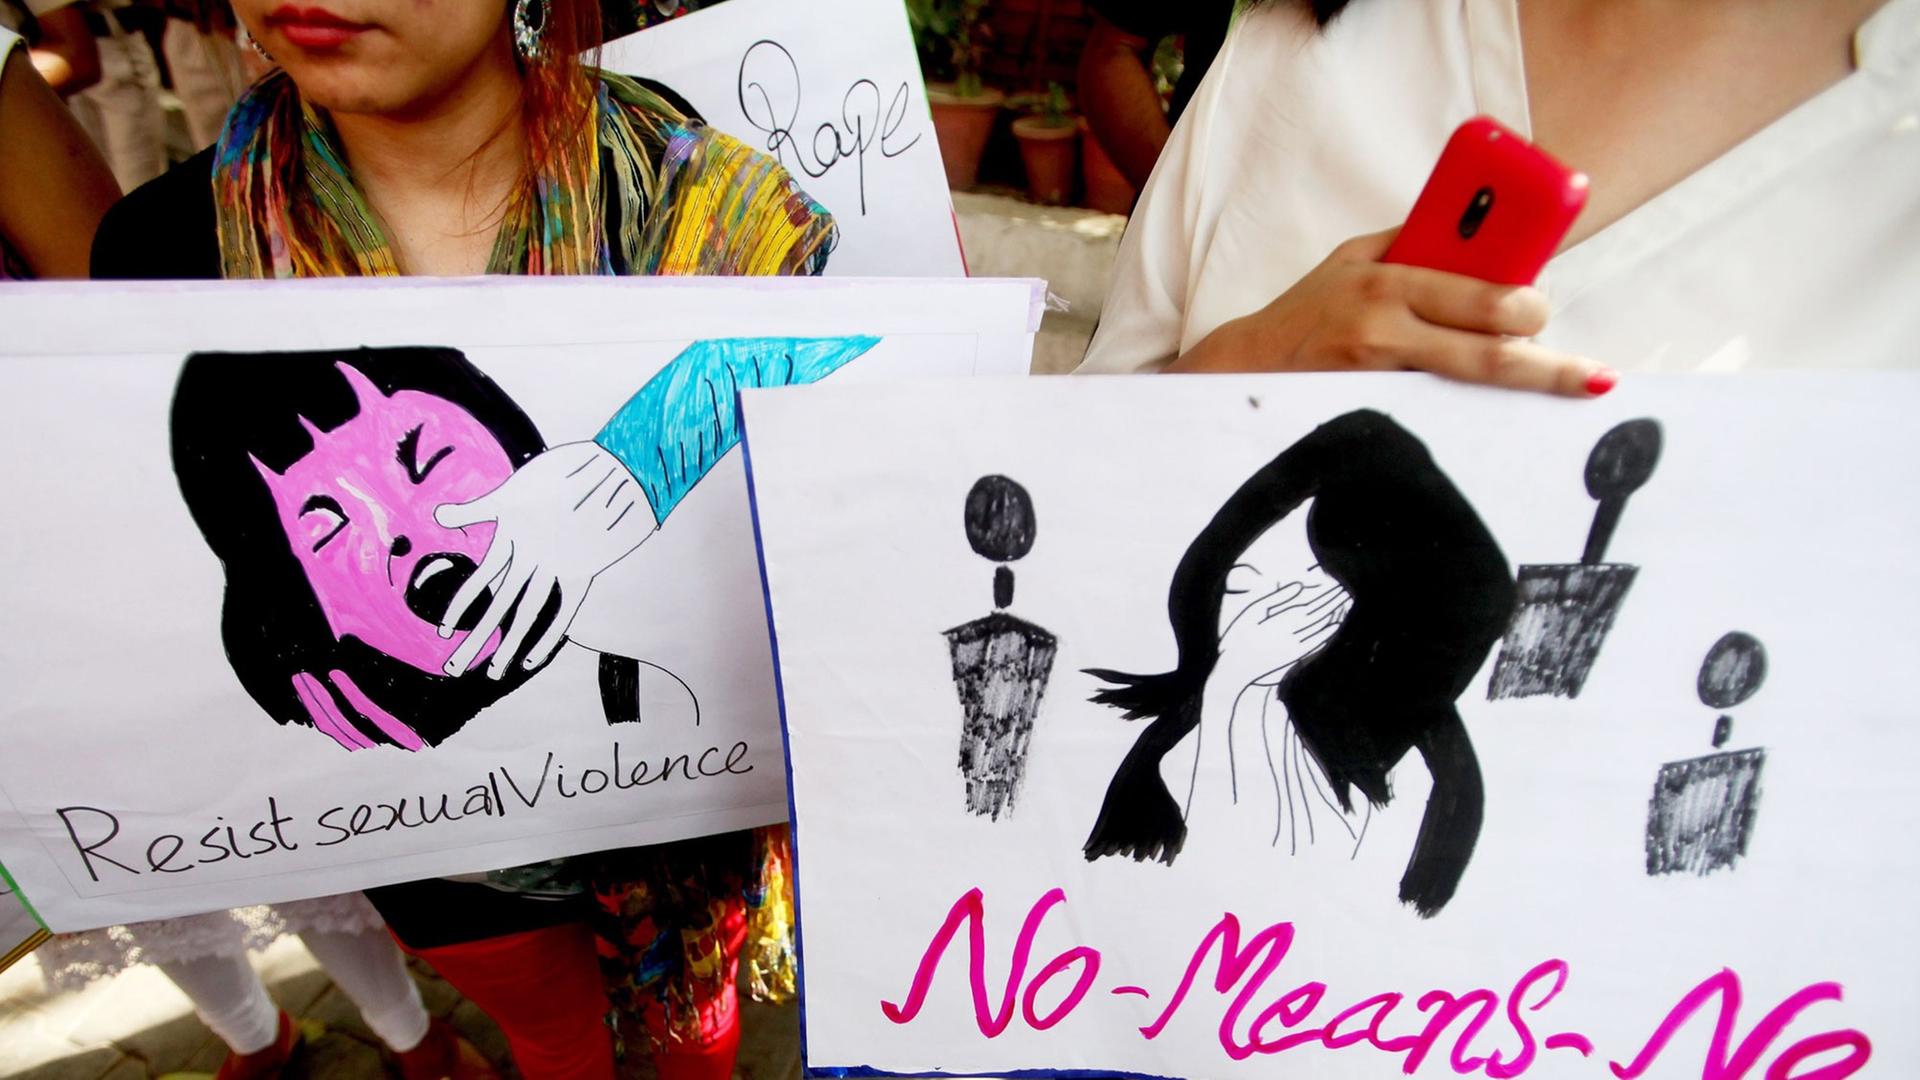 Frauen protestieren in der indischen Hauptstadt Neu-Delhi im Juni 2014 gegen sexuelle Gewalt.